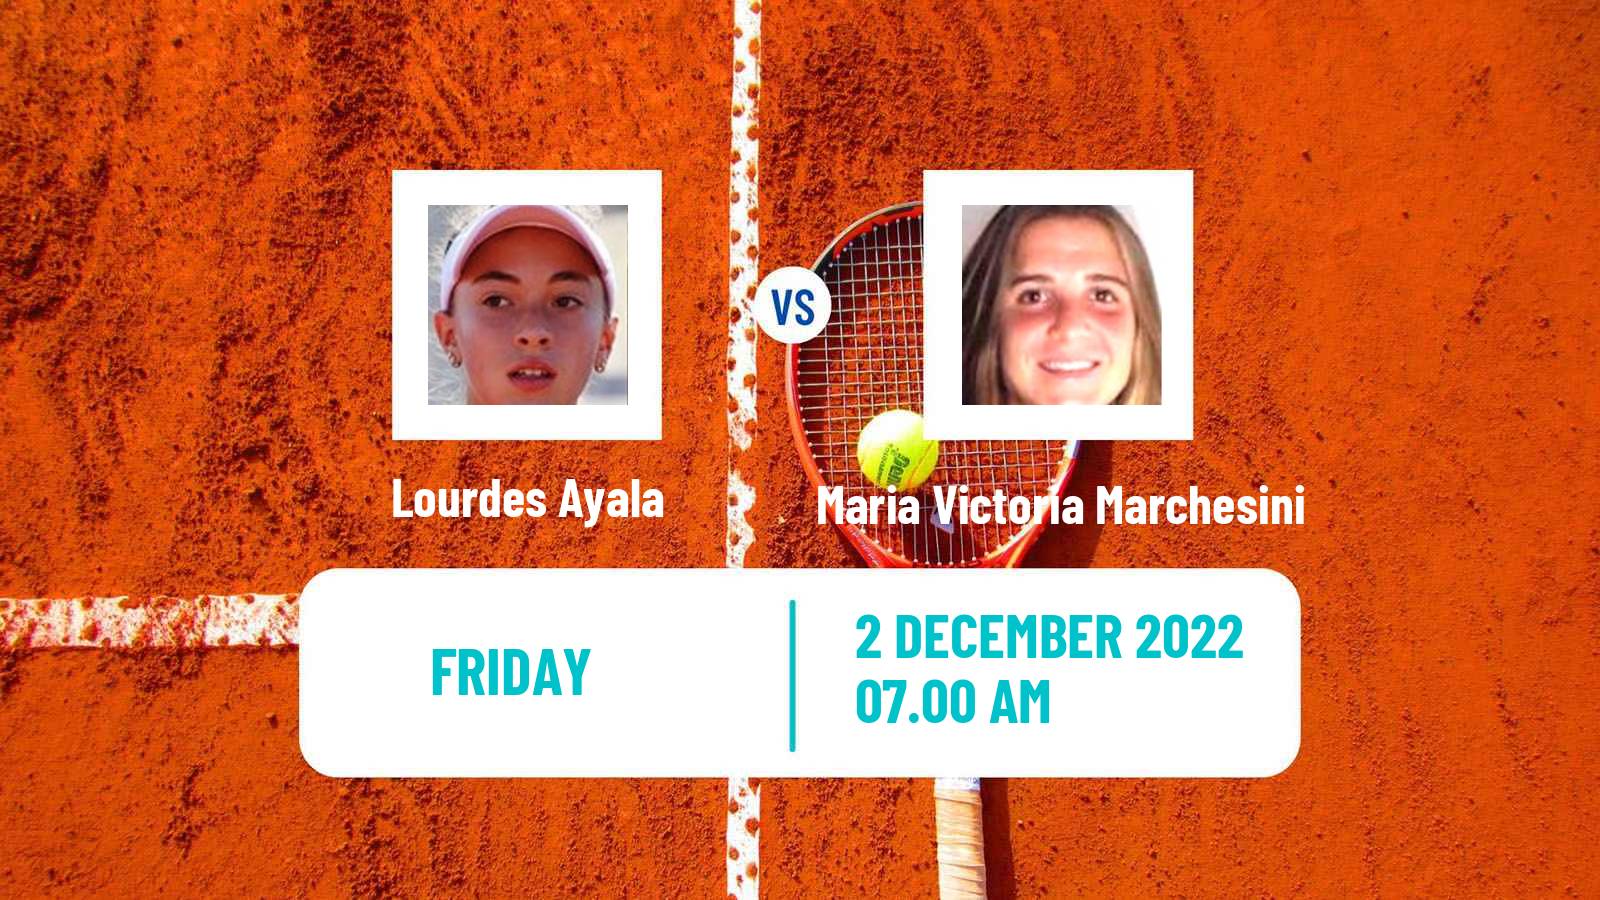 Tennis ITF Tournaments Lourdes Ayala - Maria Victoria Marchesini